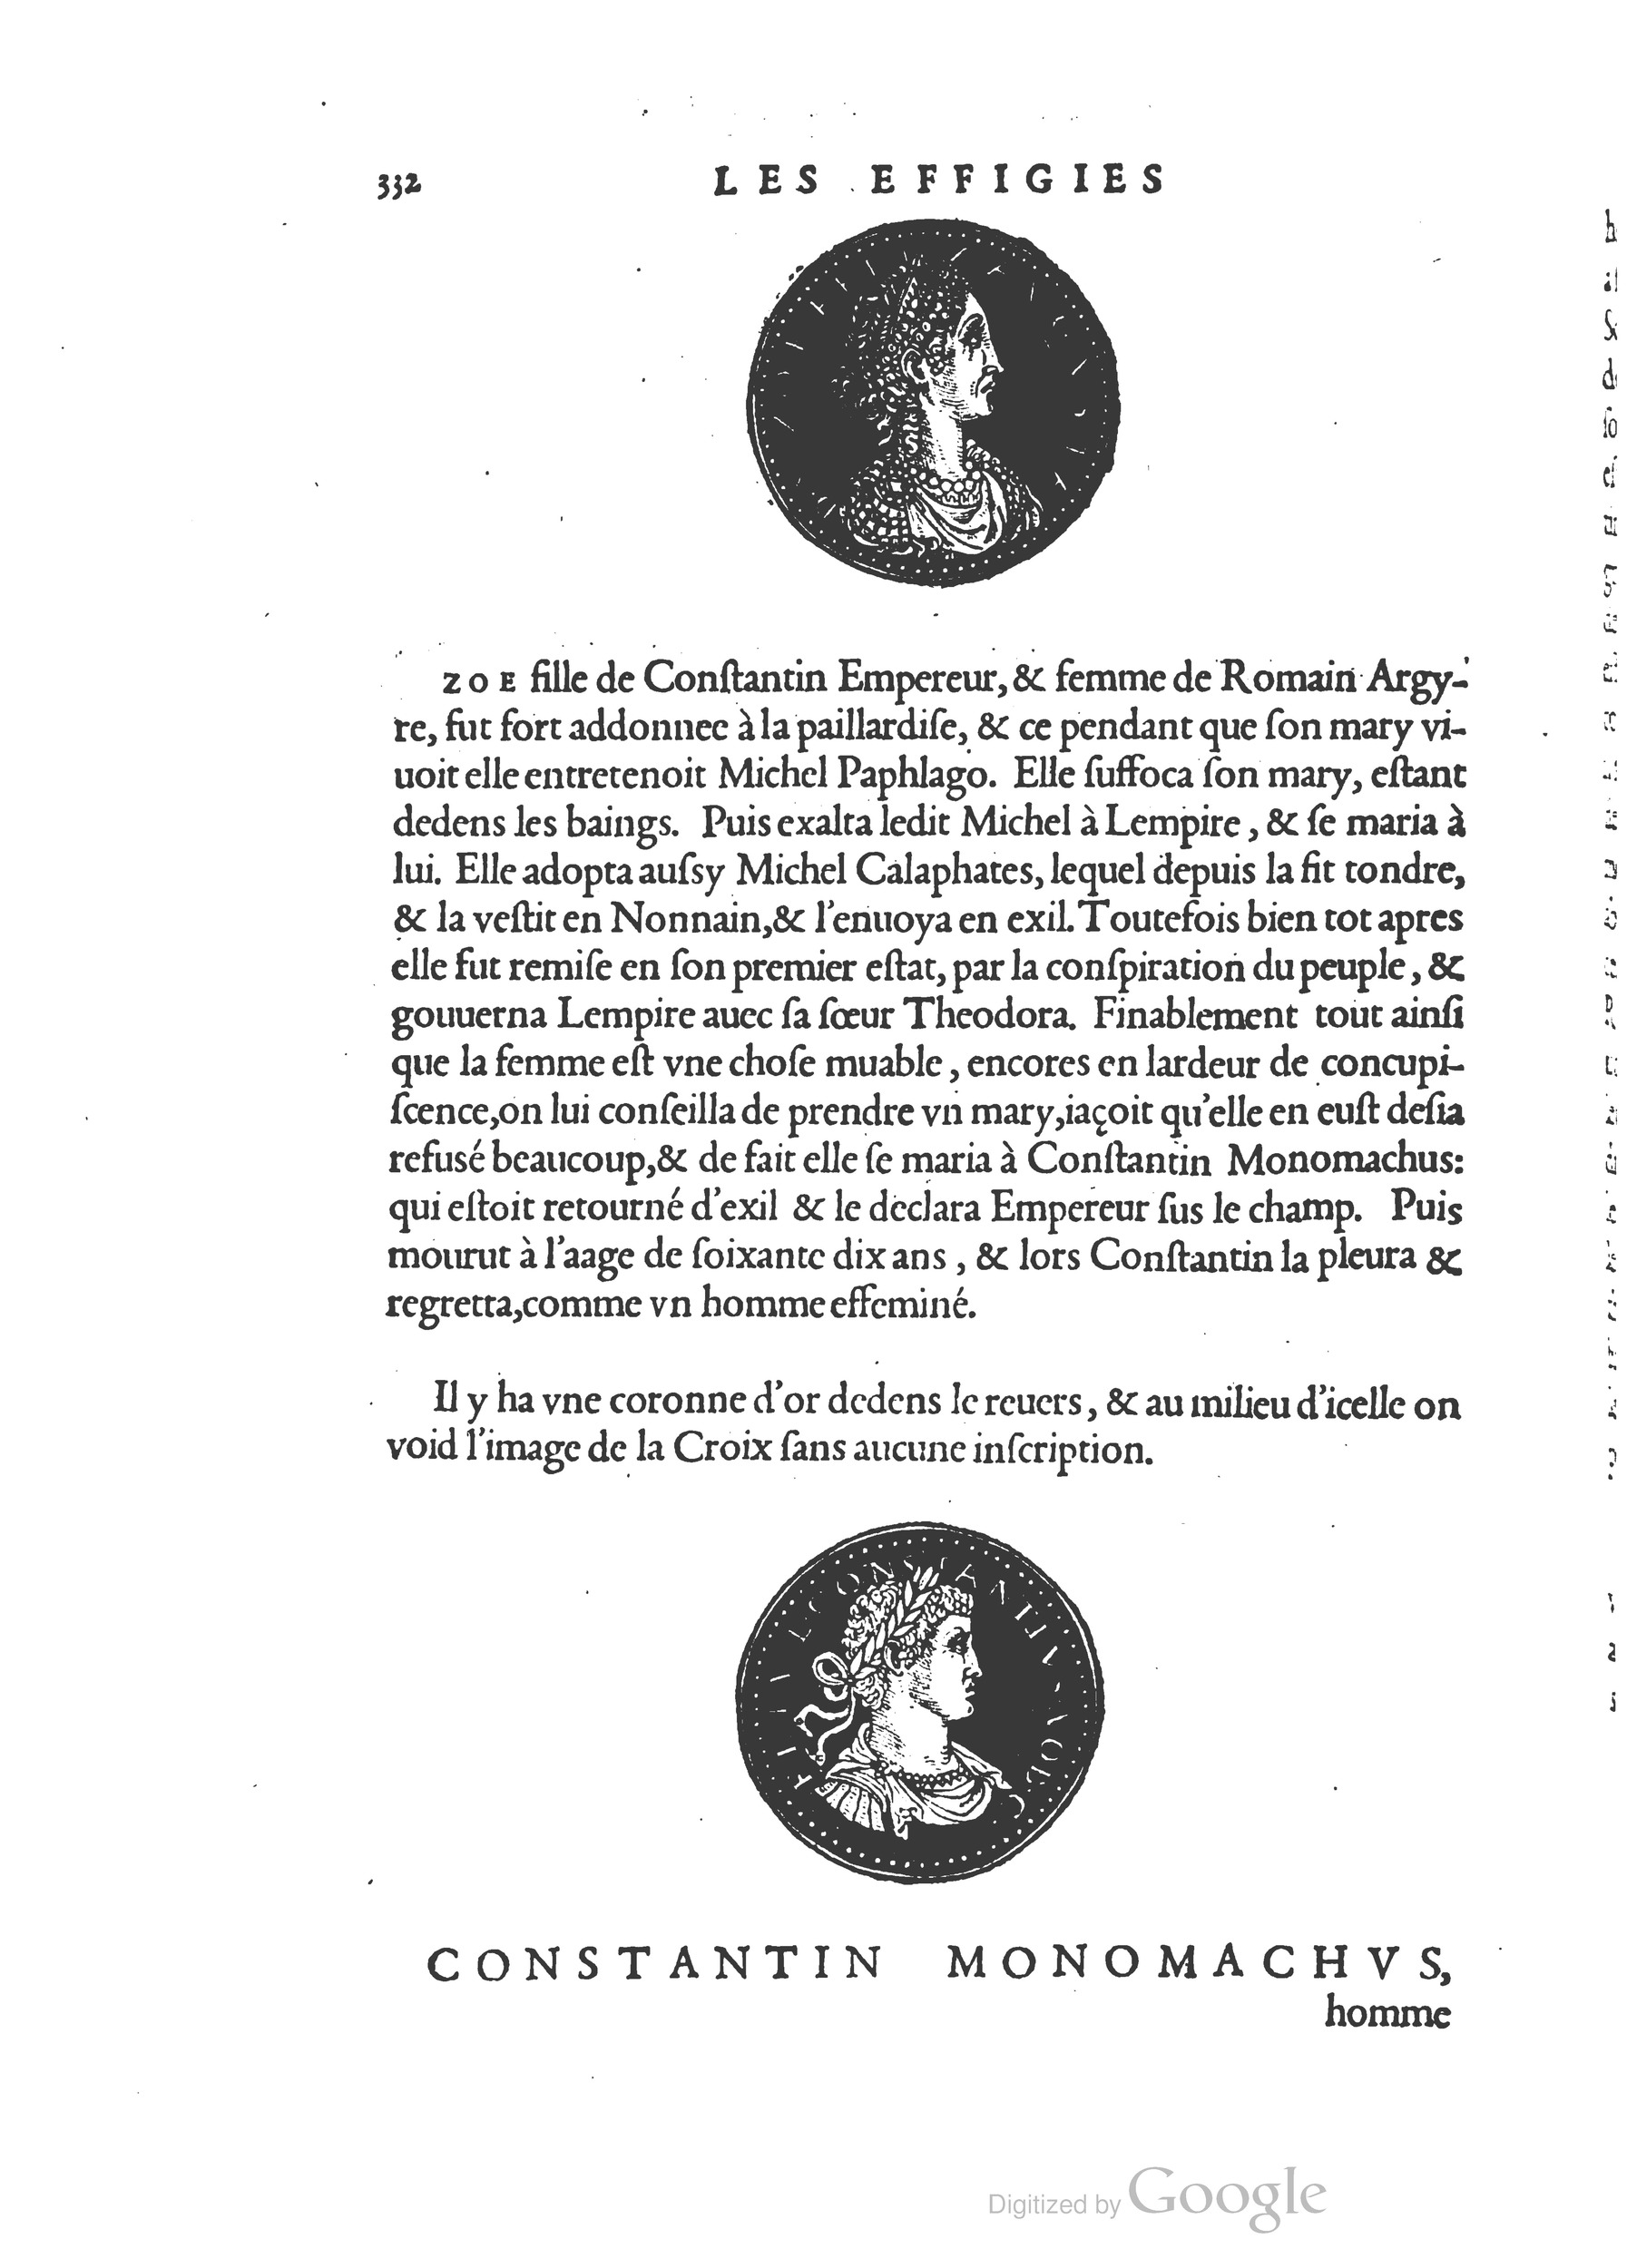 1553 Epitome du trésor des antiquités Strada Guérin_BM Lyon_Page_365.jpg